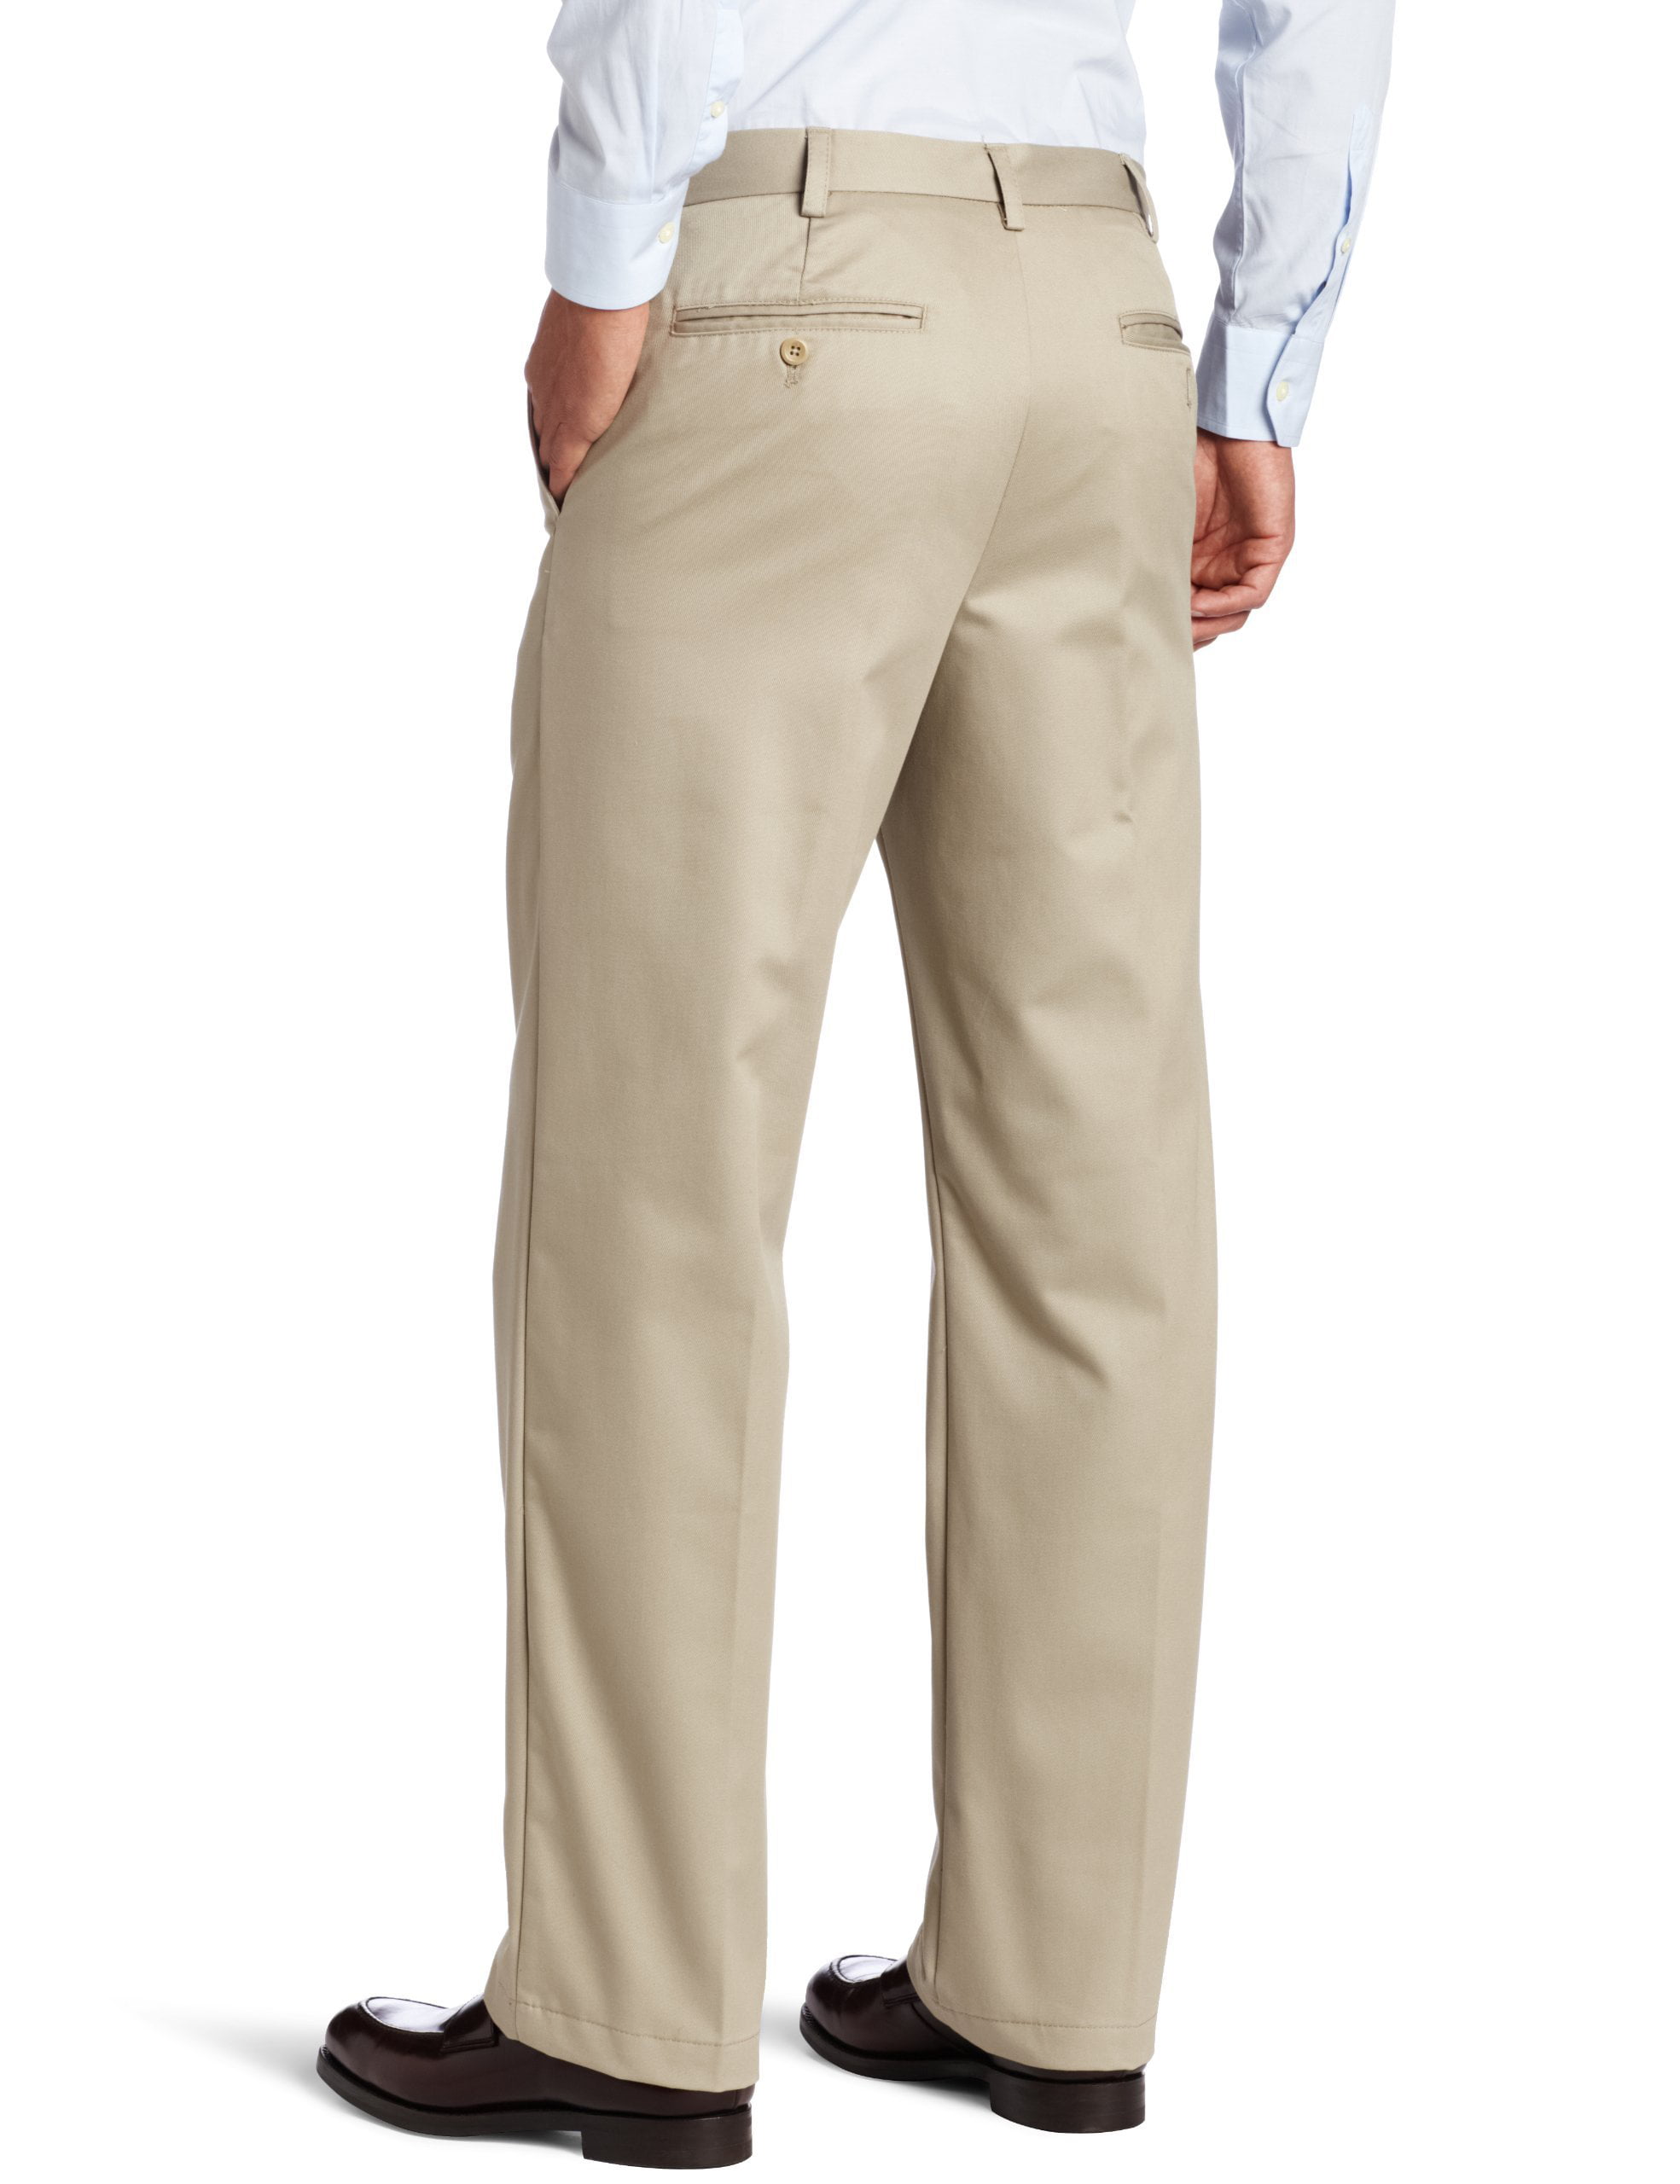 IZOD Men's American Chino Flat Front Straight Fit Pant 38W x 34L Khaki